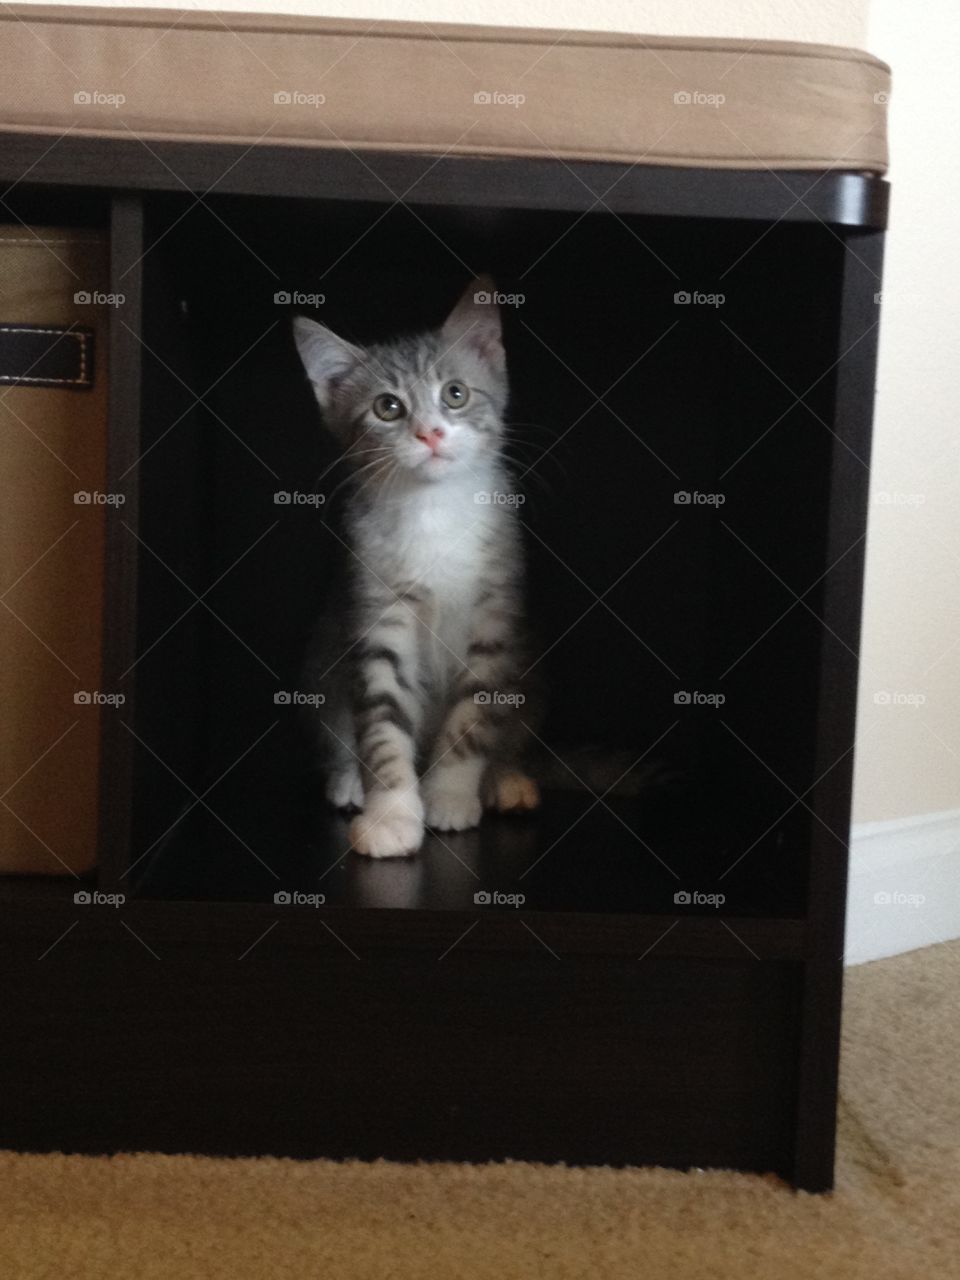 Kitten finds a new hiding spot